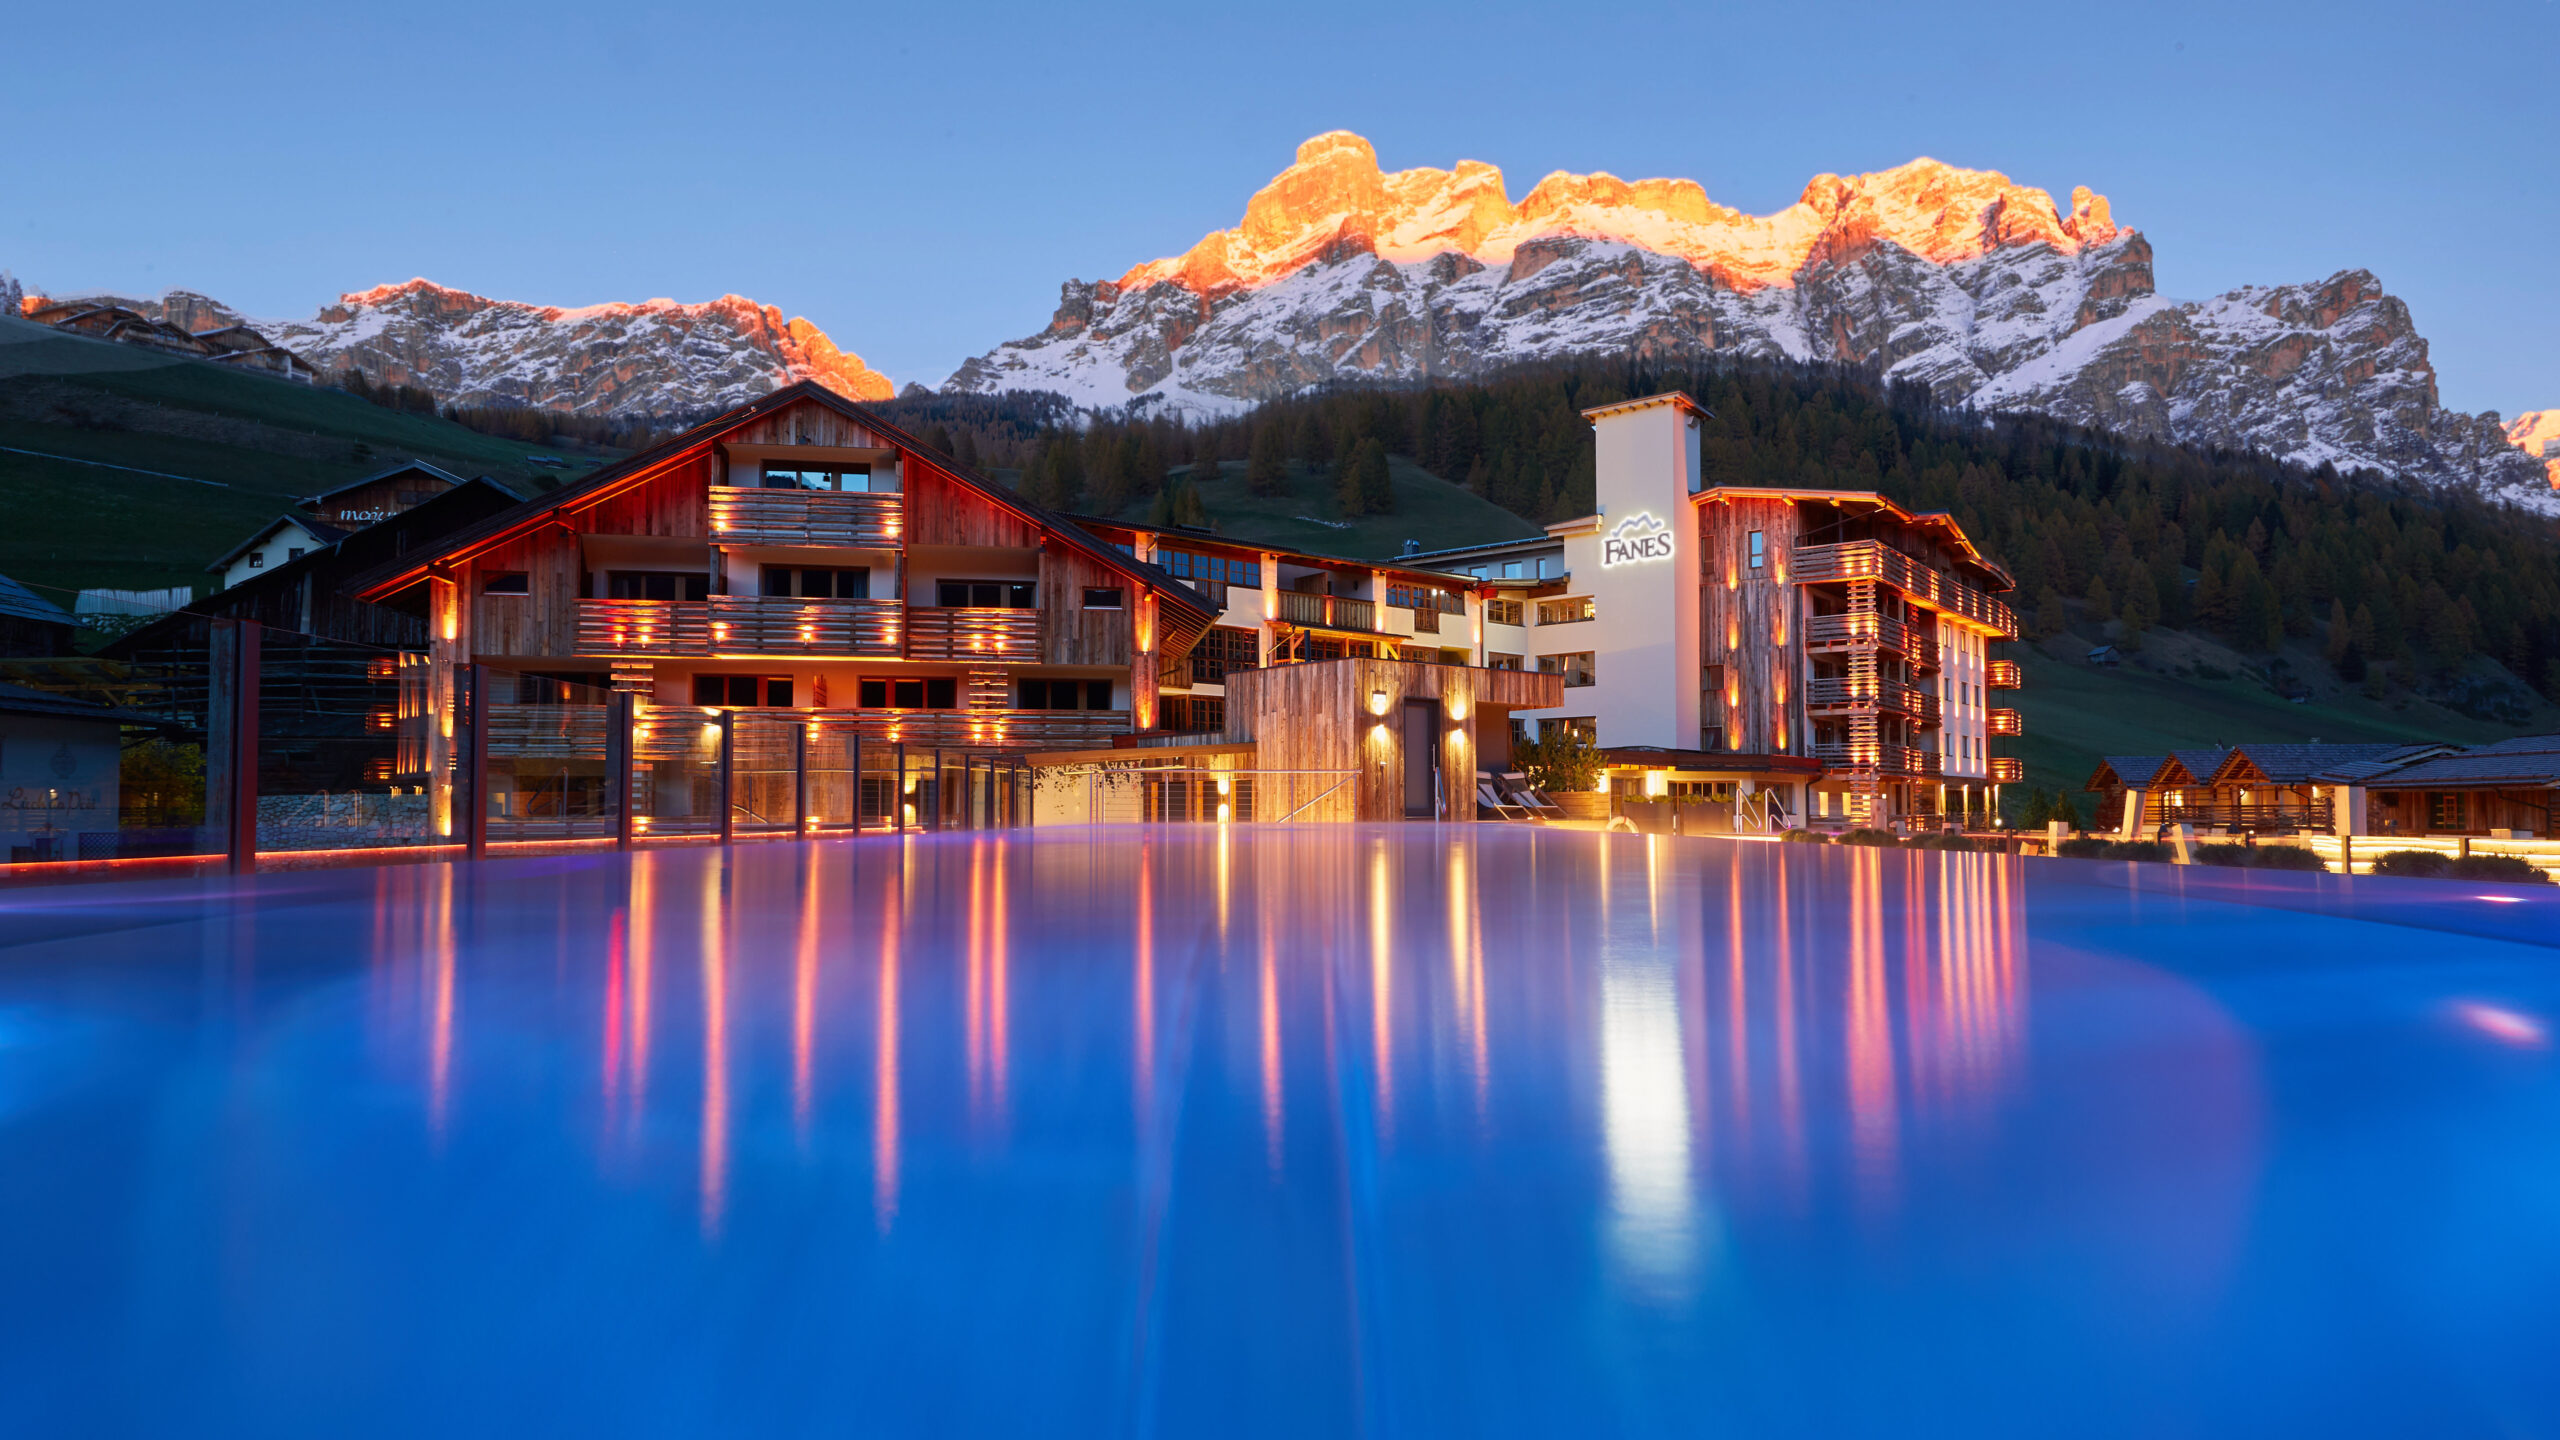 Nuovo look per il Dolomiti Wellness Hotel Fanes. Tante le novità